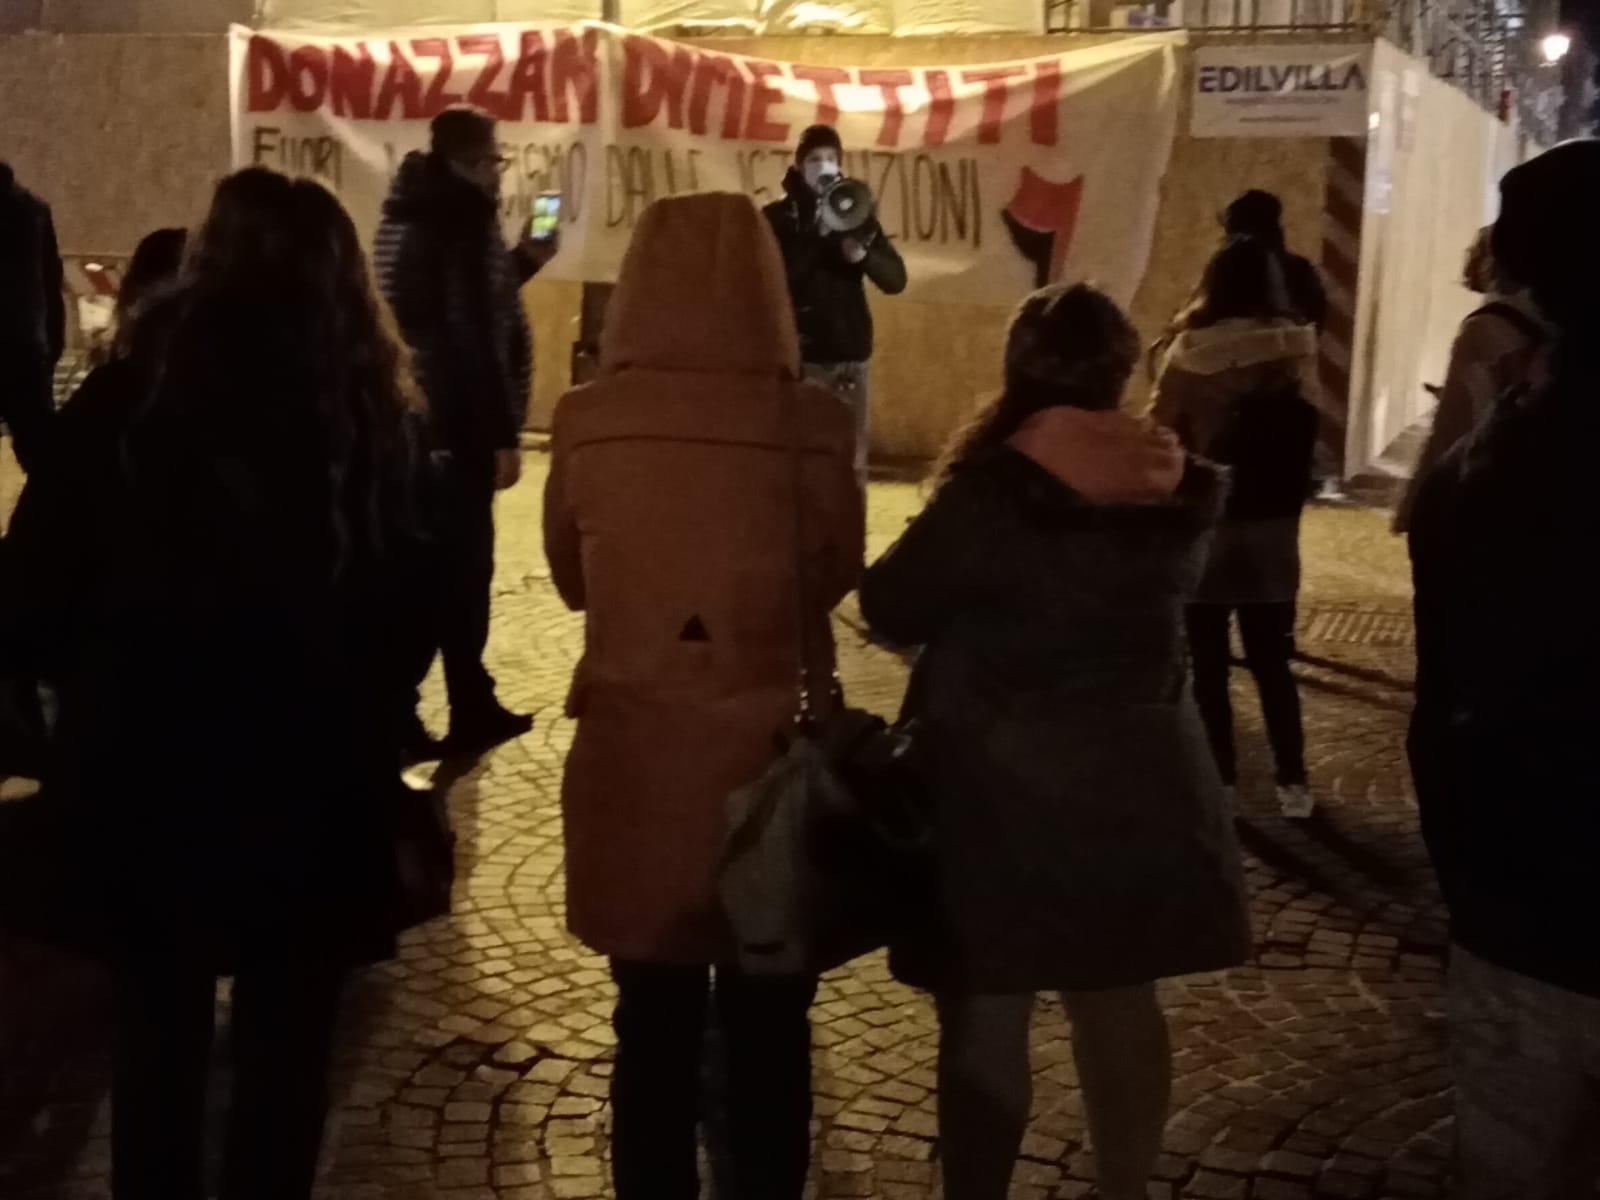 Donazzan dimettiti manifestazione Vicenza